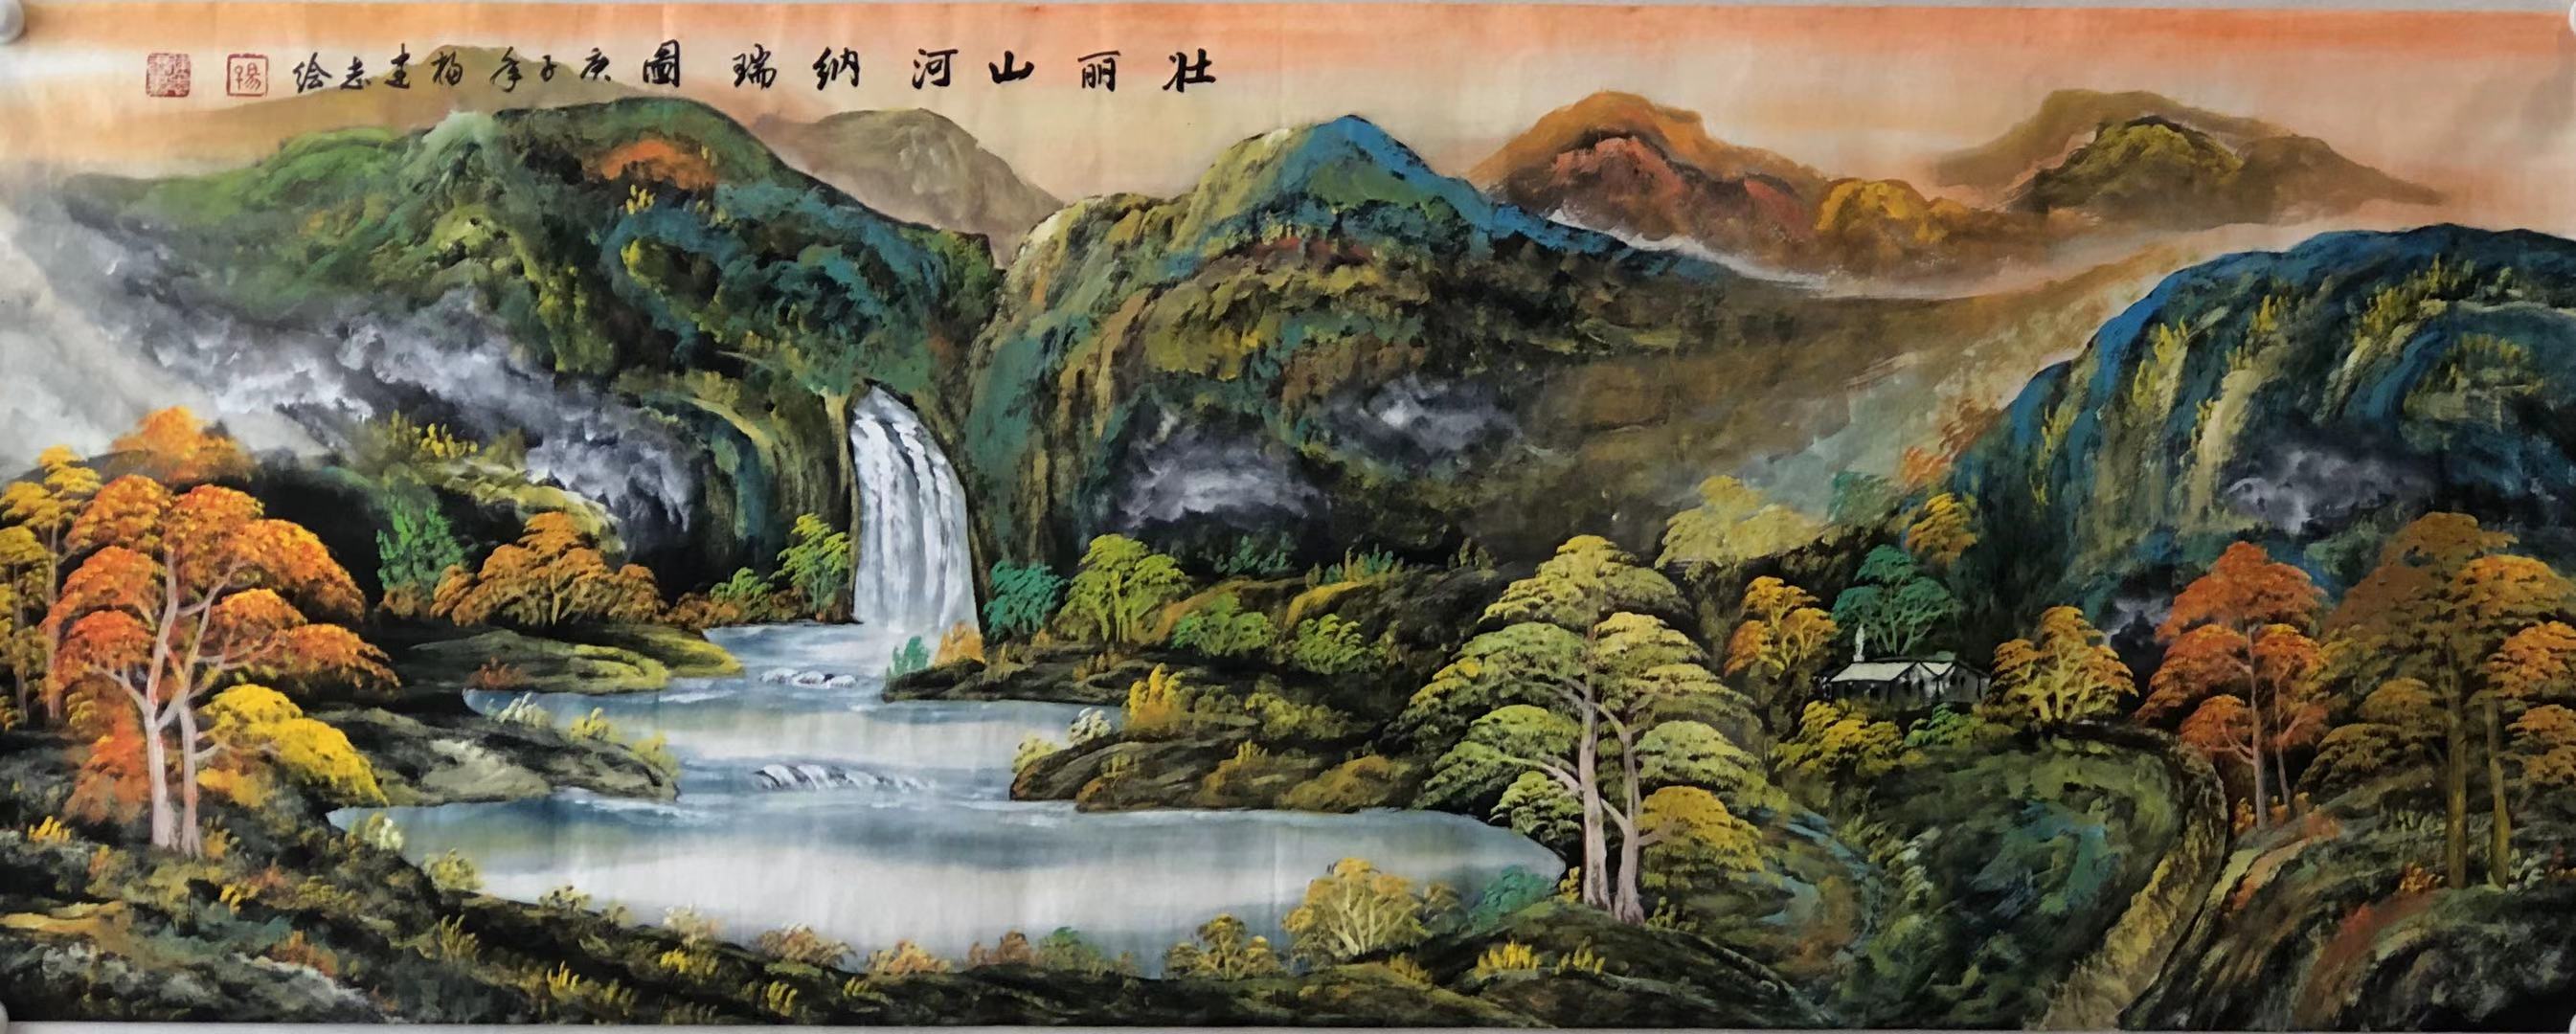 原创山水画作品展——当代著名画家,书法家杨建志